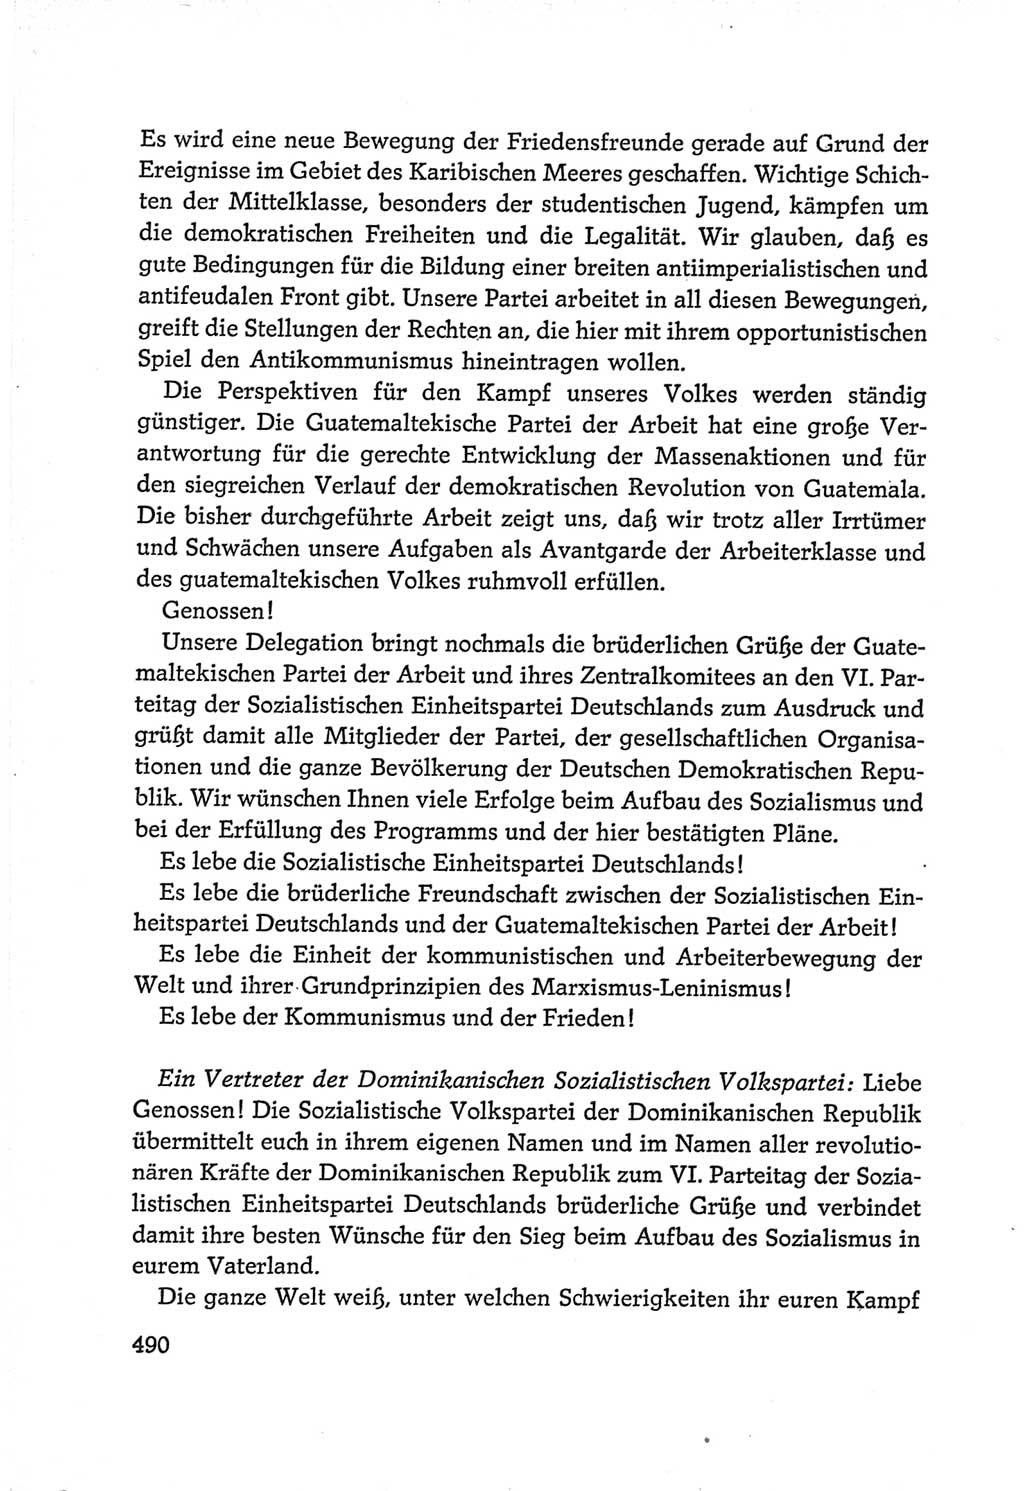 Protokoll der Verhandlungen des Ⅵ. Parteitages der Sozialistischen Einheitspartei Deutschlands (SED) [Deutsche Demokratische Republik (DDR)] 1963, Band Ⅱ, Seite 490 (Prot. Verh. Ⅵ. PT SED DDR 1963, Bd. Ⅱ, S. 490)